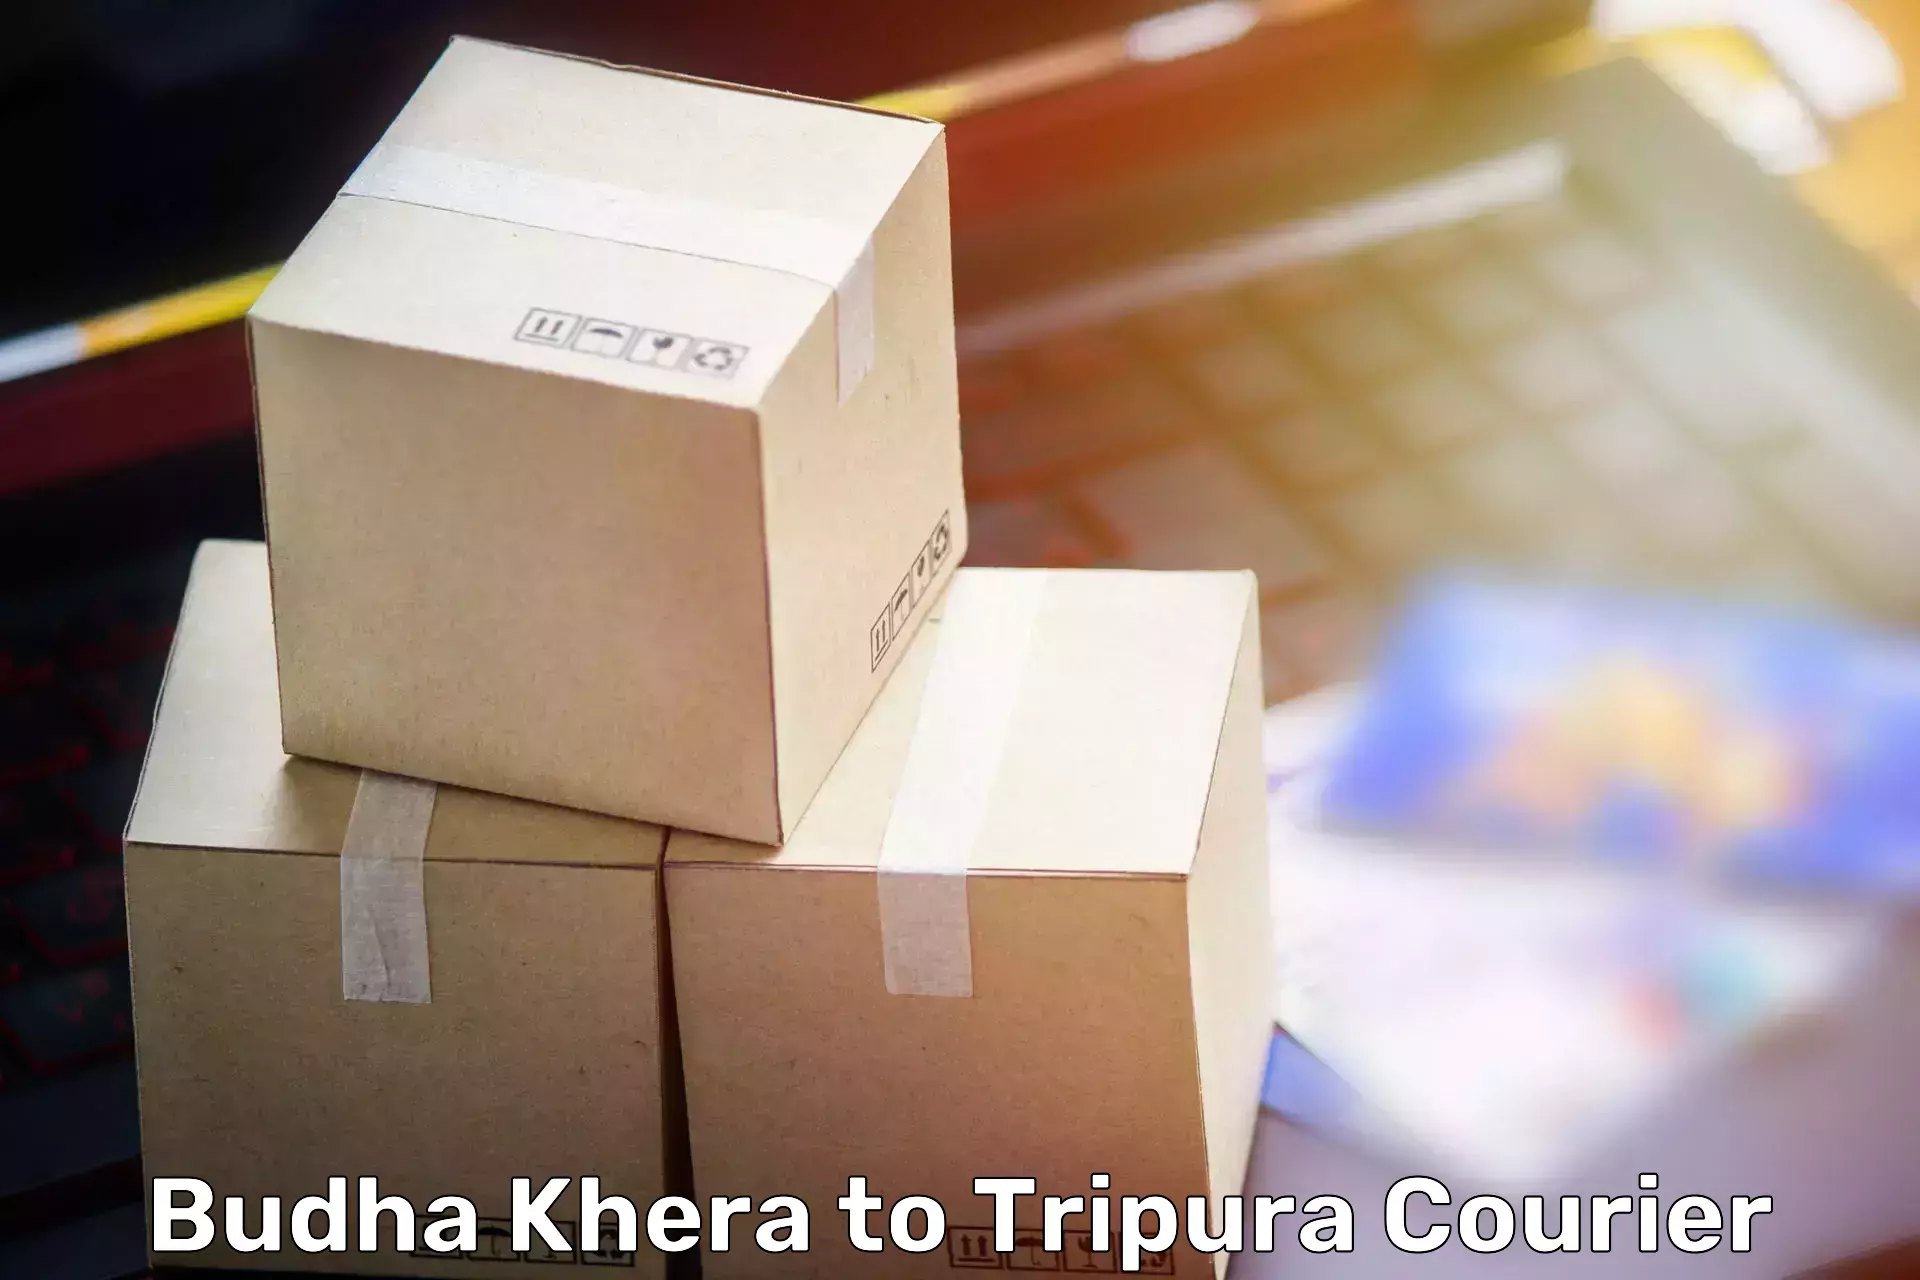 Quality moving and storage Budha Khera to Udaipur Tripura